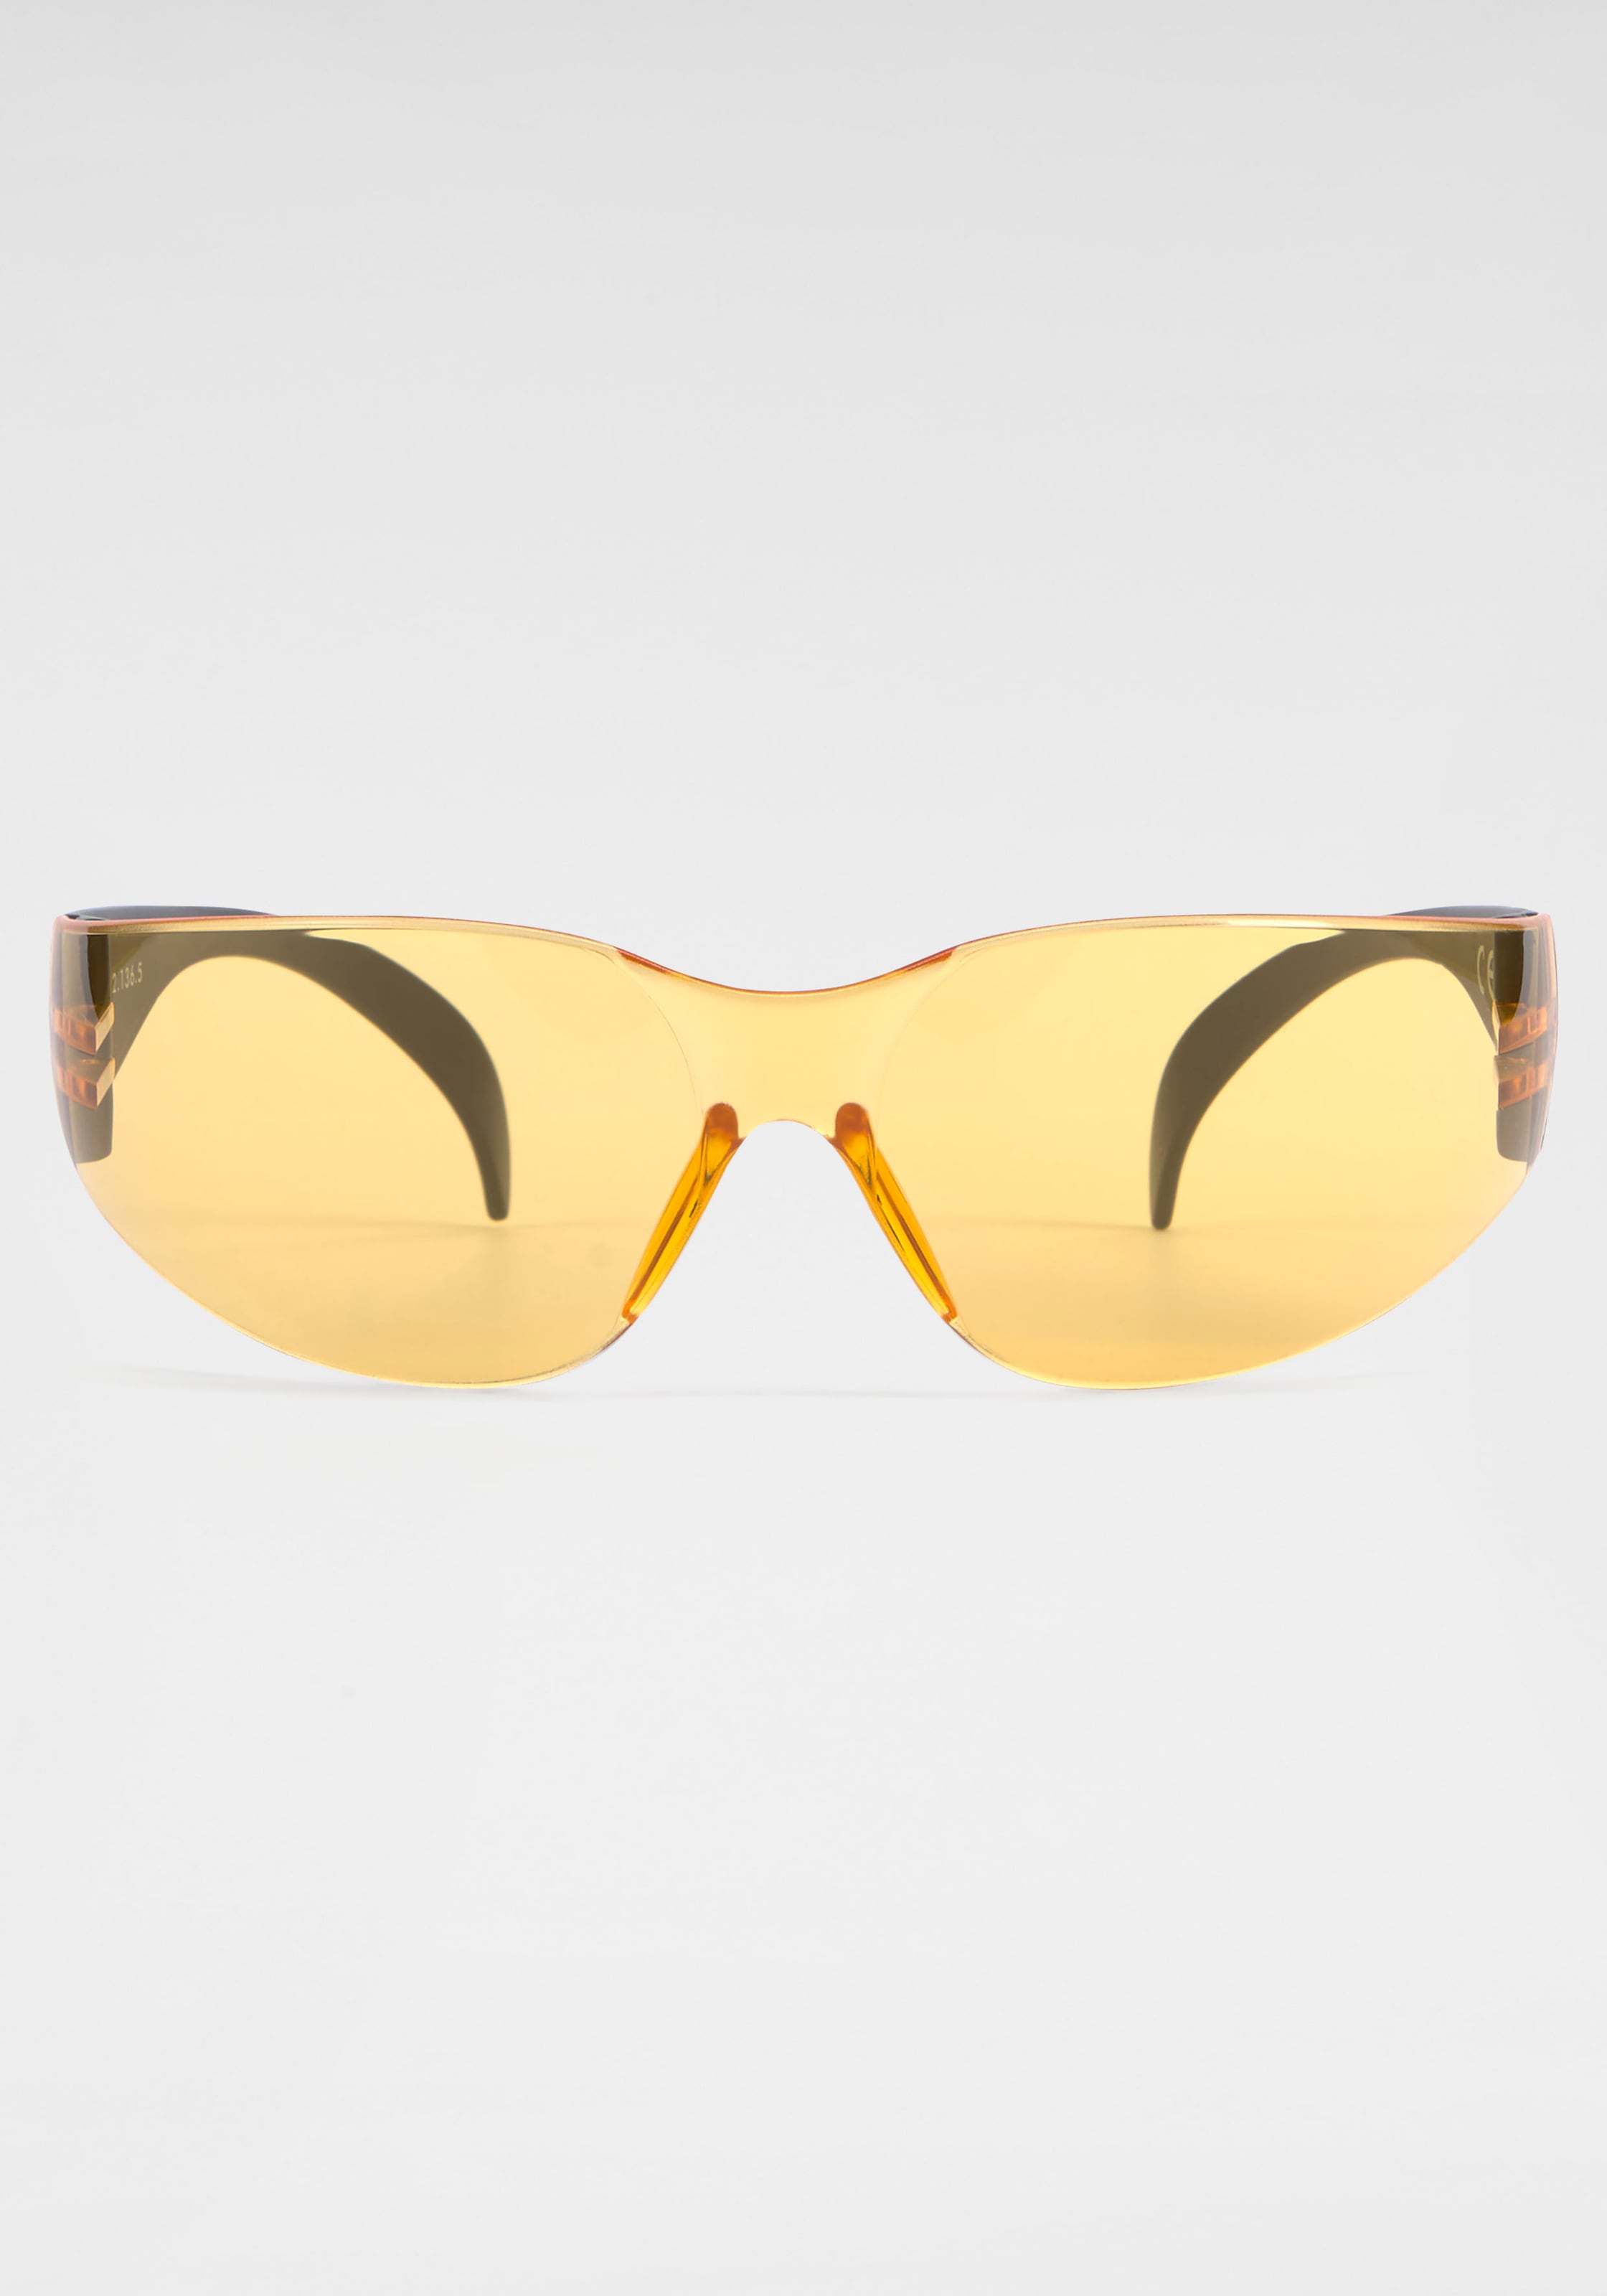 BACK IN BLACK Eyewear Sonnenbrille, Randlos bei online shoppen OTTO